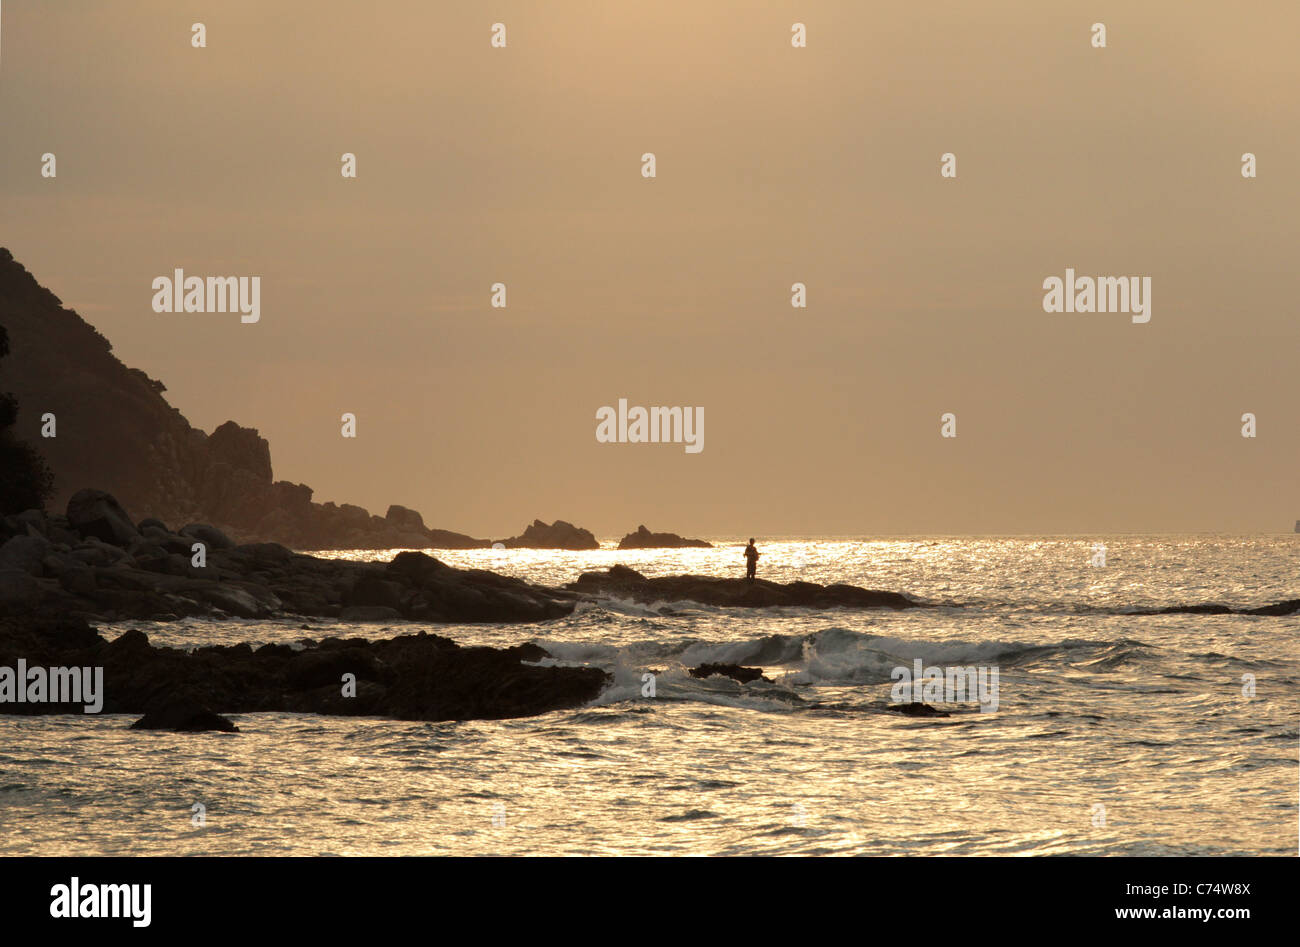 Tramonto sulla spiaggia e rocce con un uomo esca la pesca Foto Stock